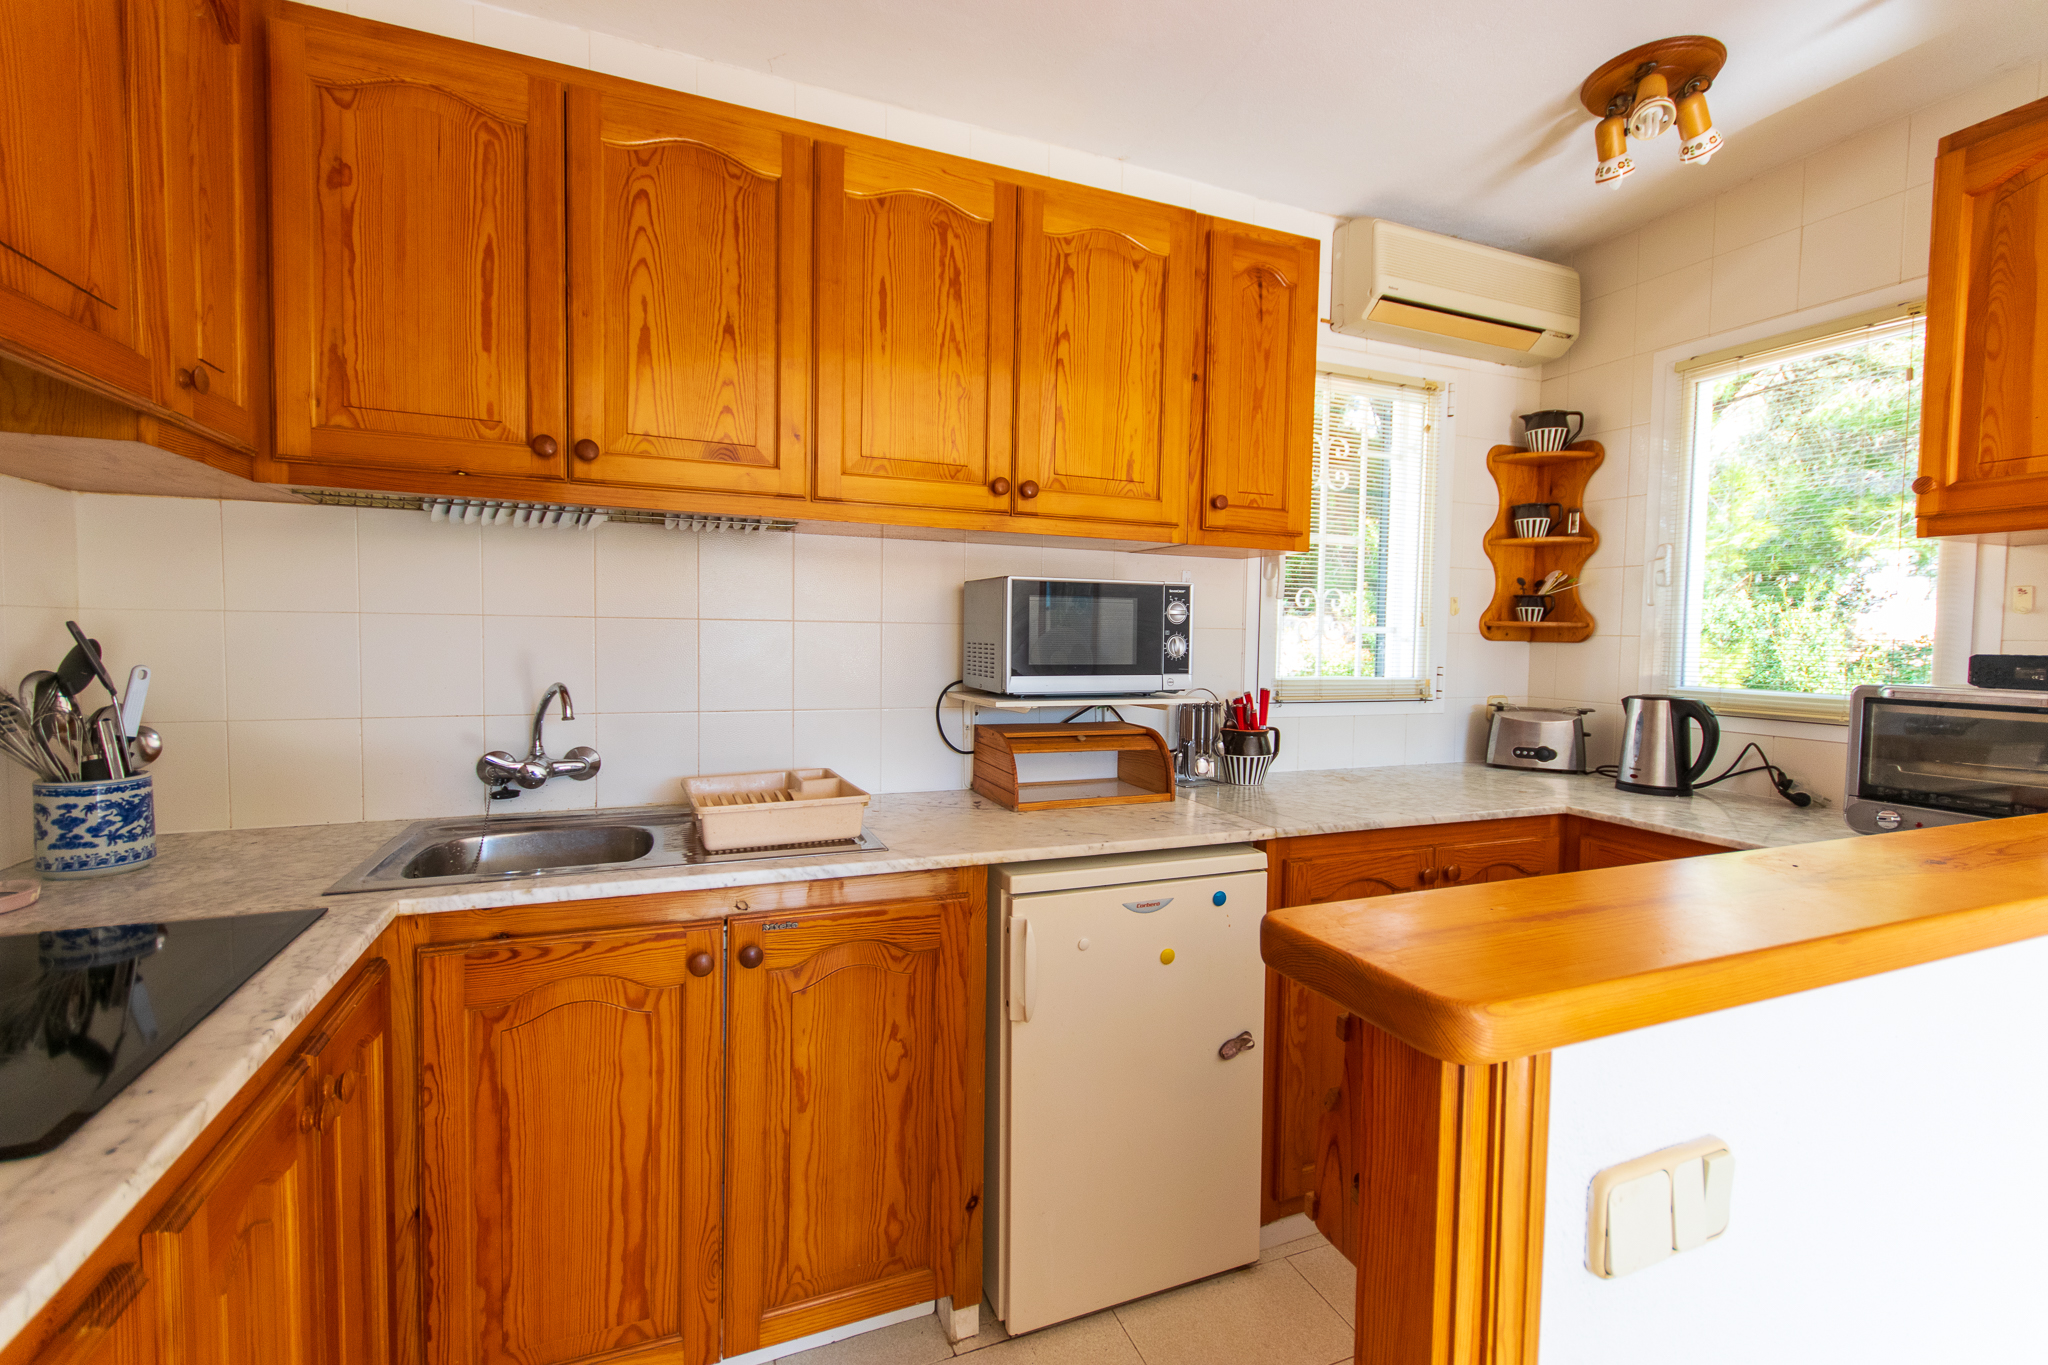 Duplex kitchen with good views in Cala Galdana